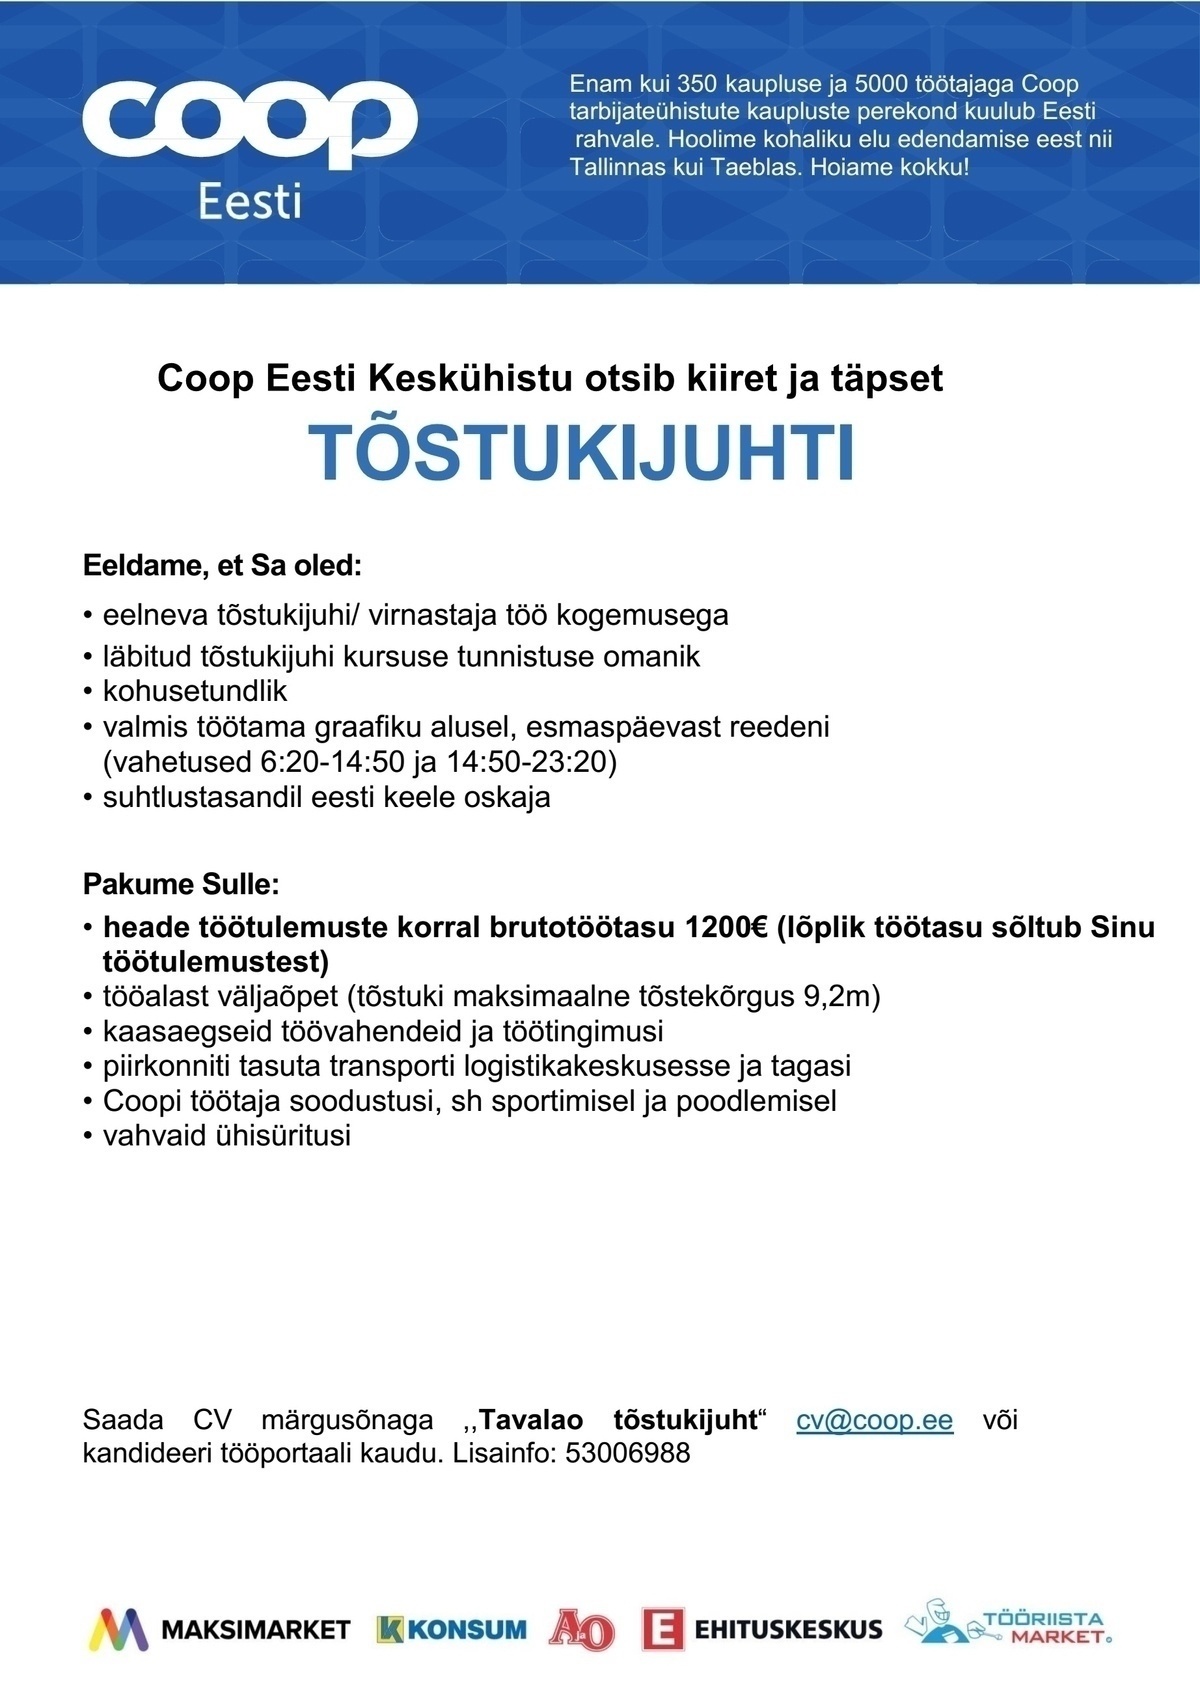 Coop Eesti Keskühistu Tõstukijuht (tavaladu)